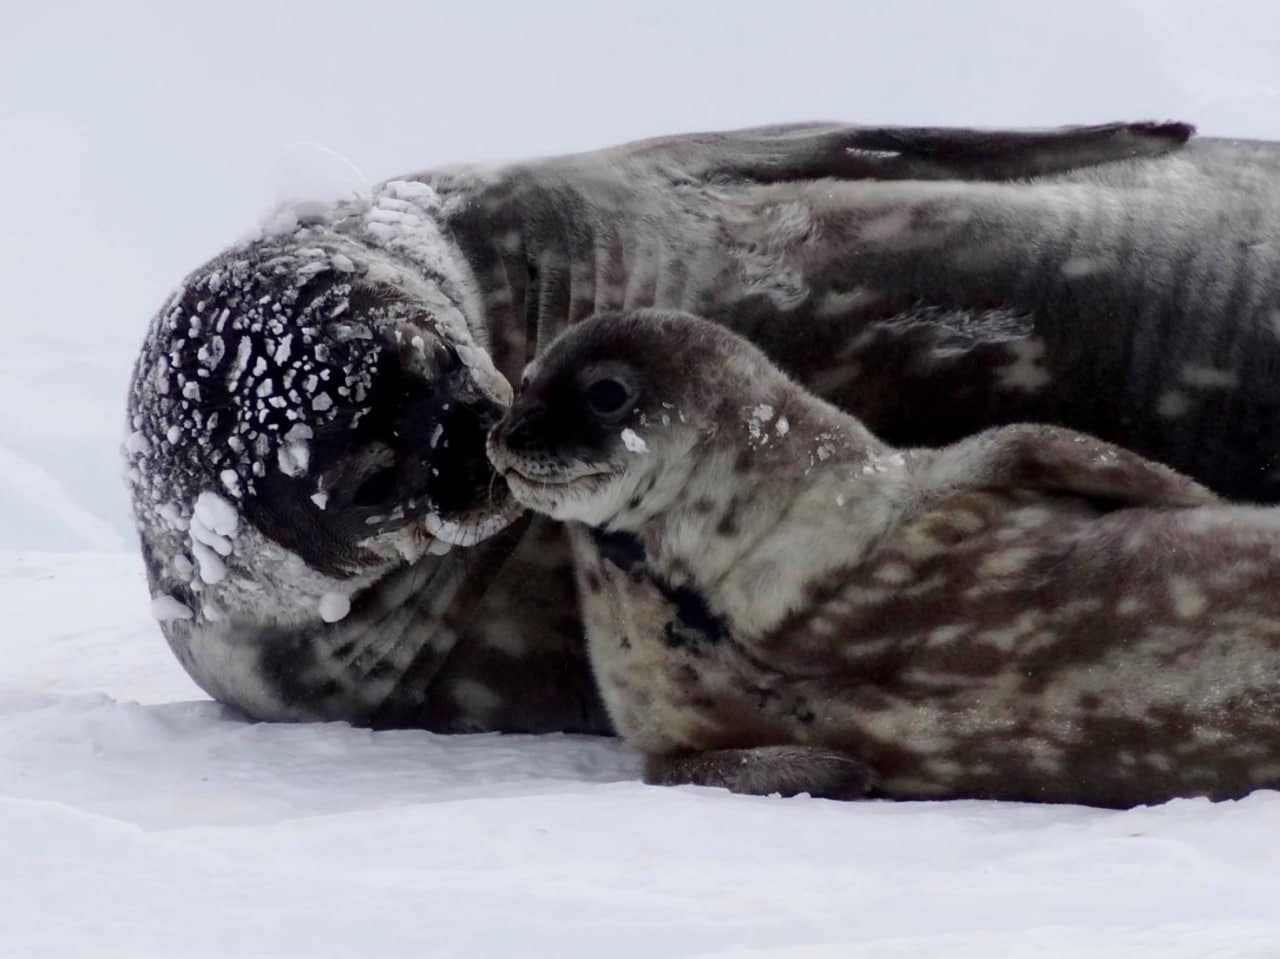 Самки тюленей жертвуют своими способностями к глубокому погружению ради детенышей